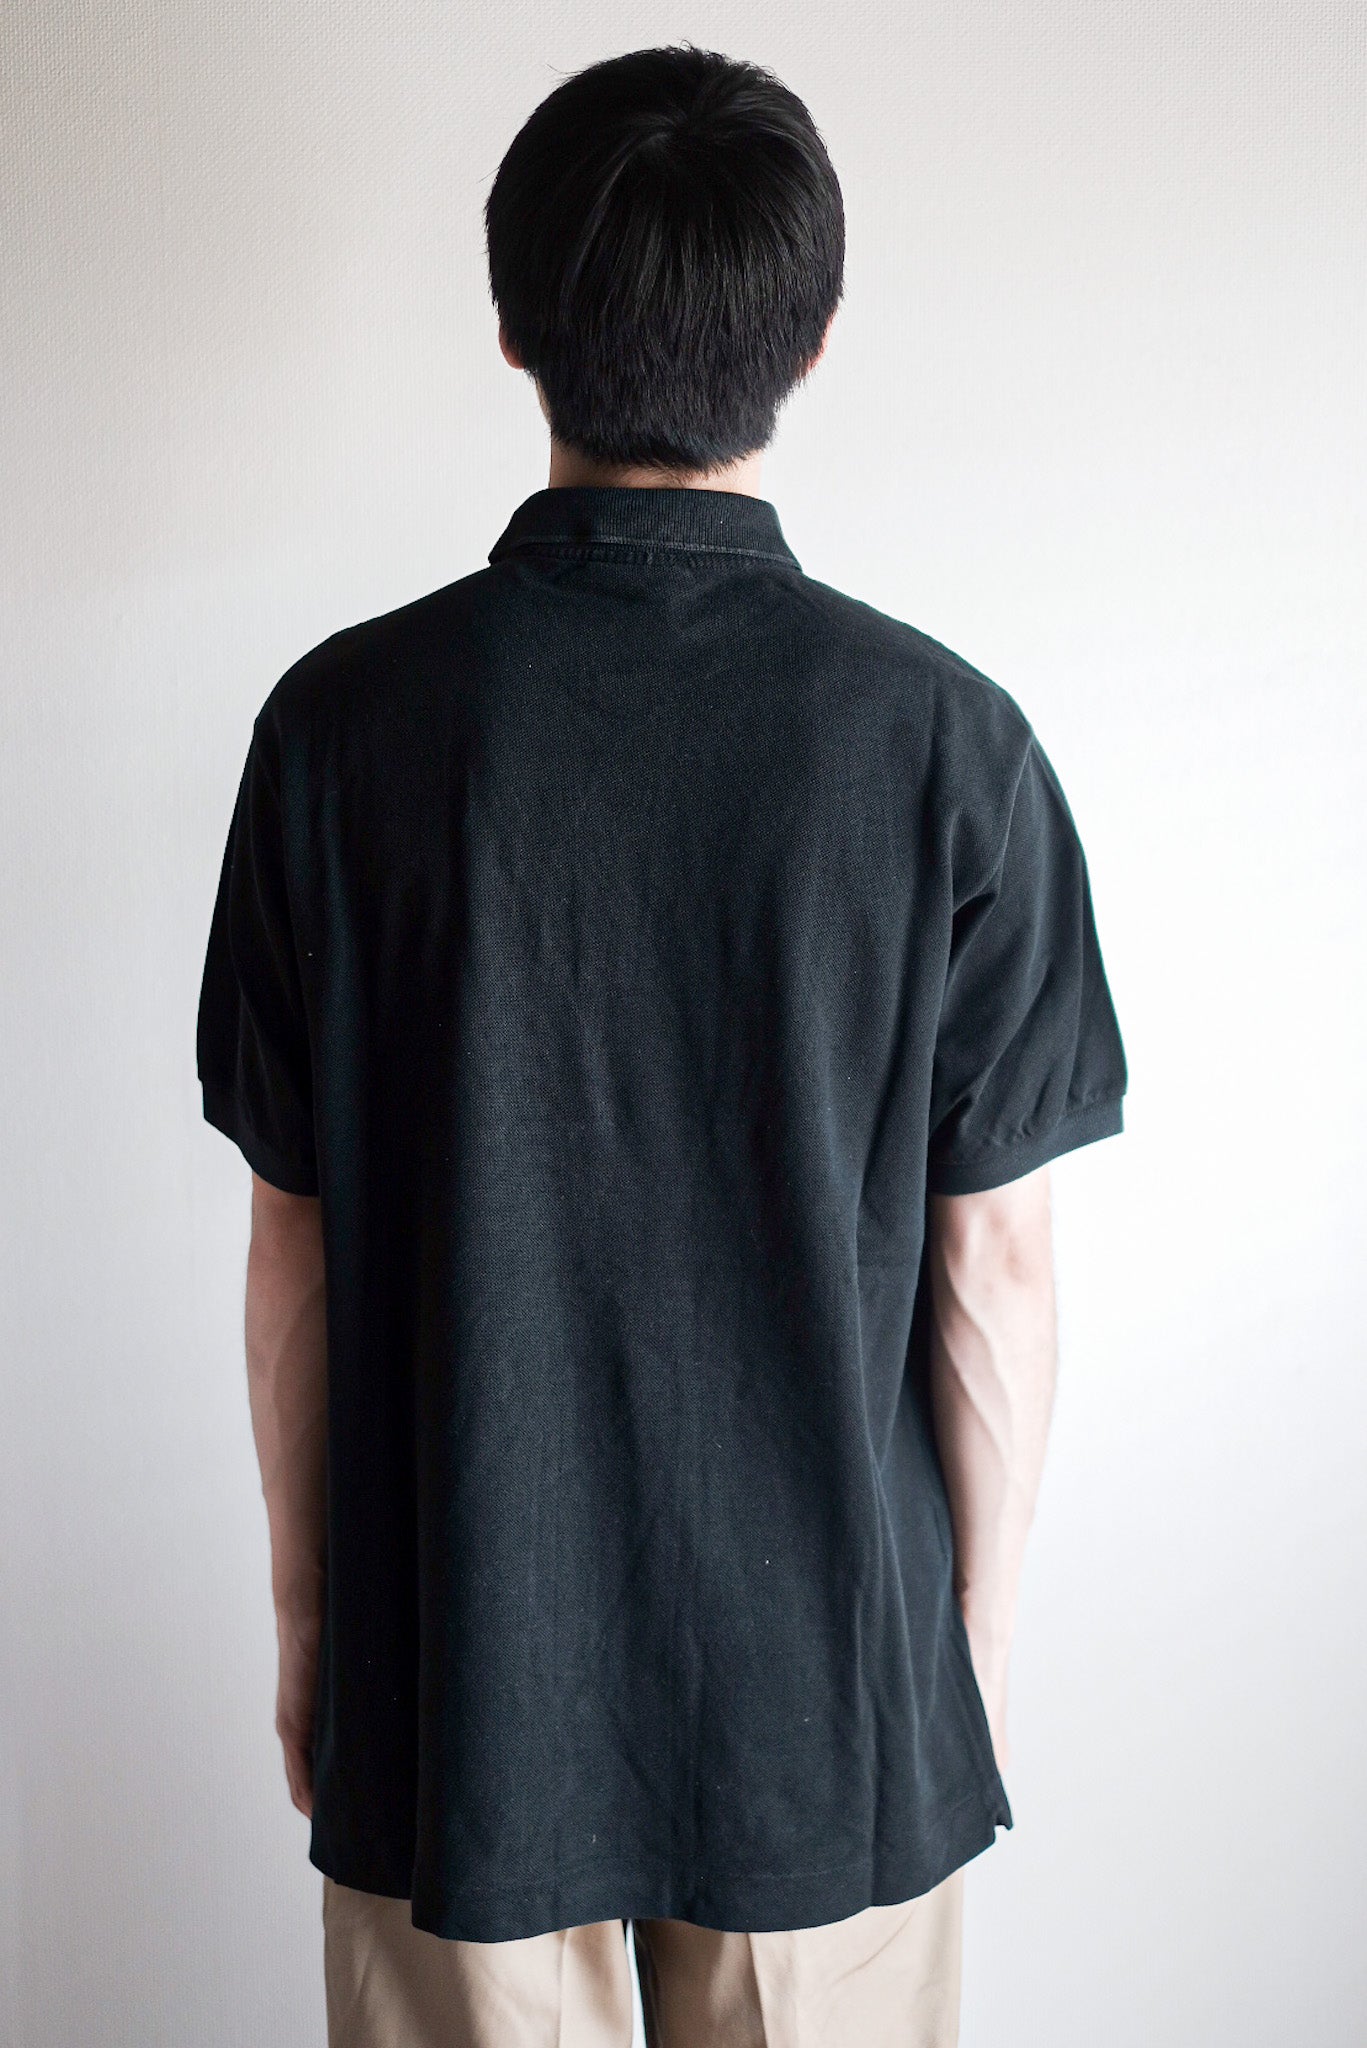 [~ 80 년대] Chemise lacoste s/s 폴로 셔츠 크기 .5 "Black"